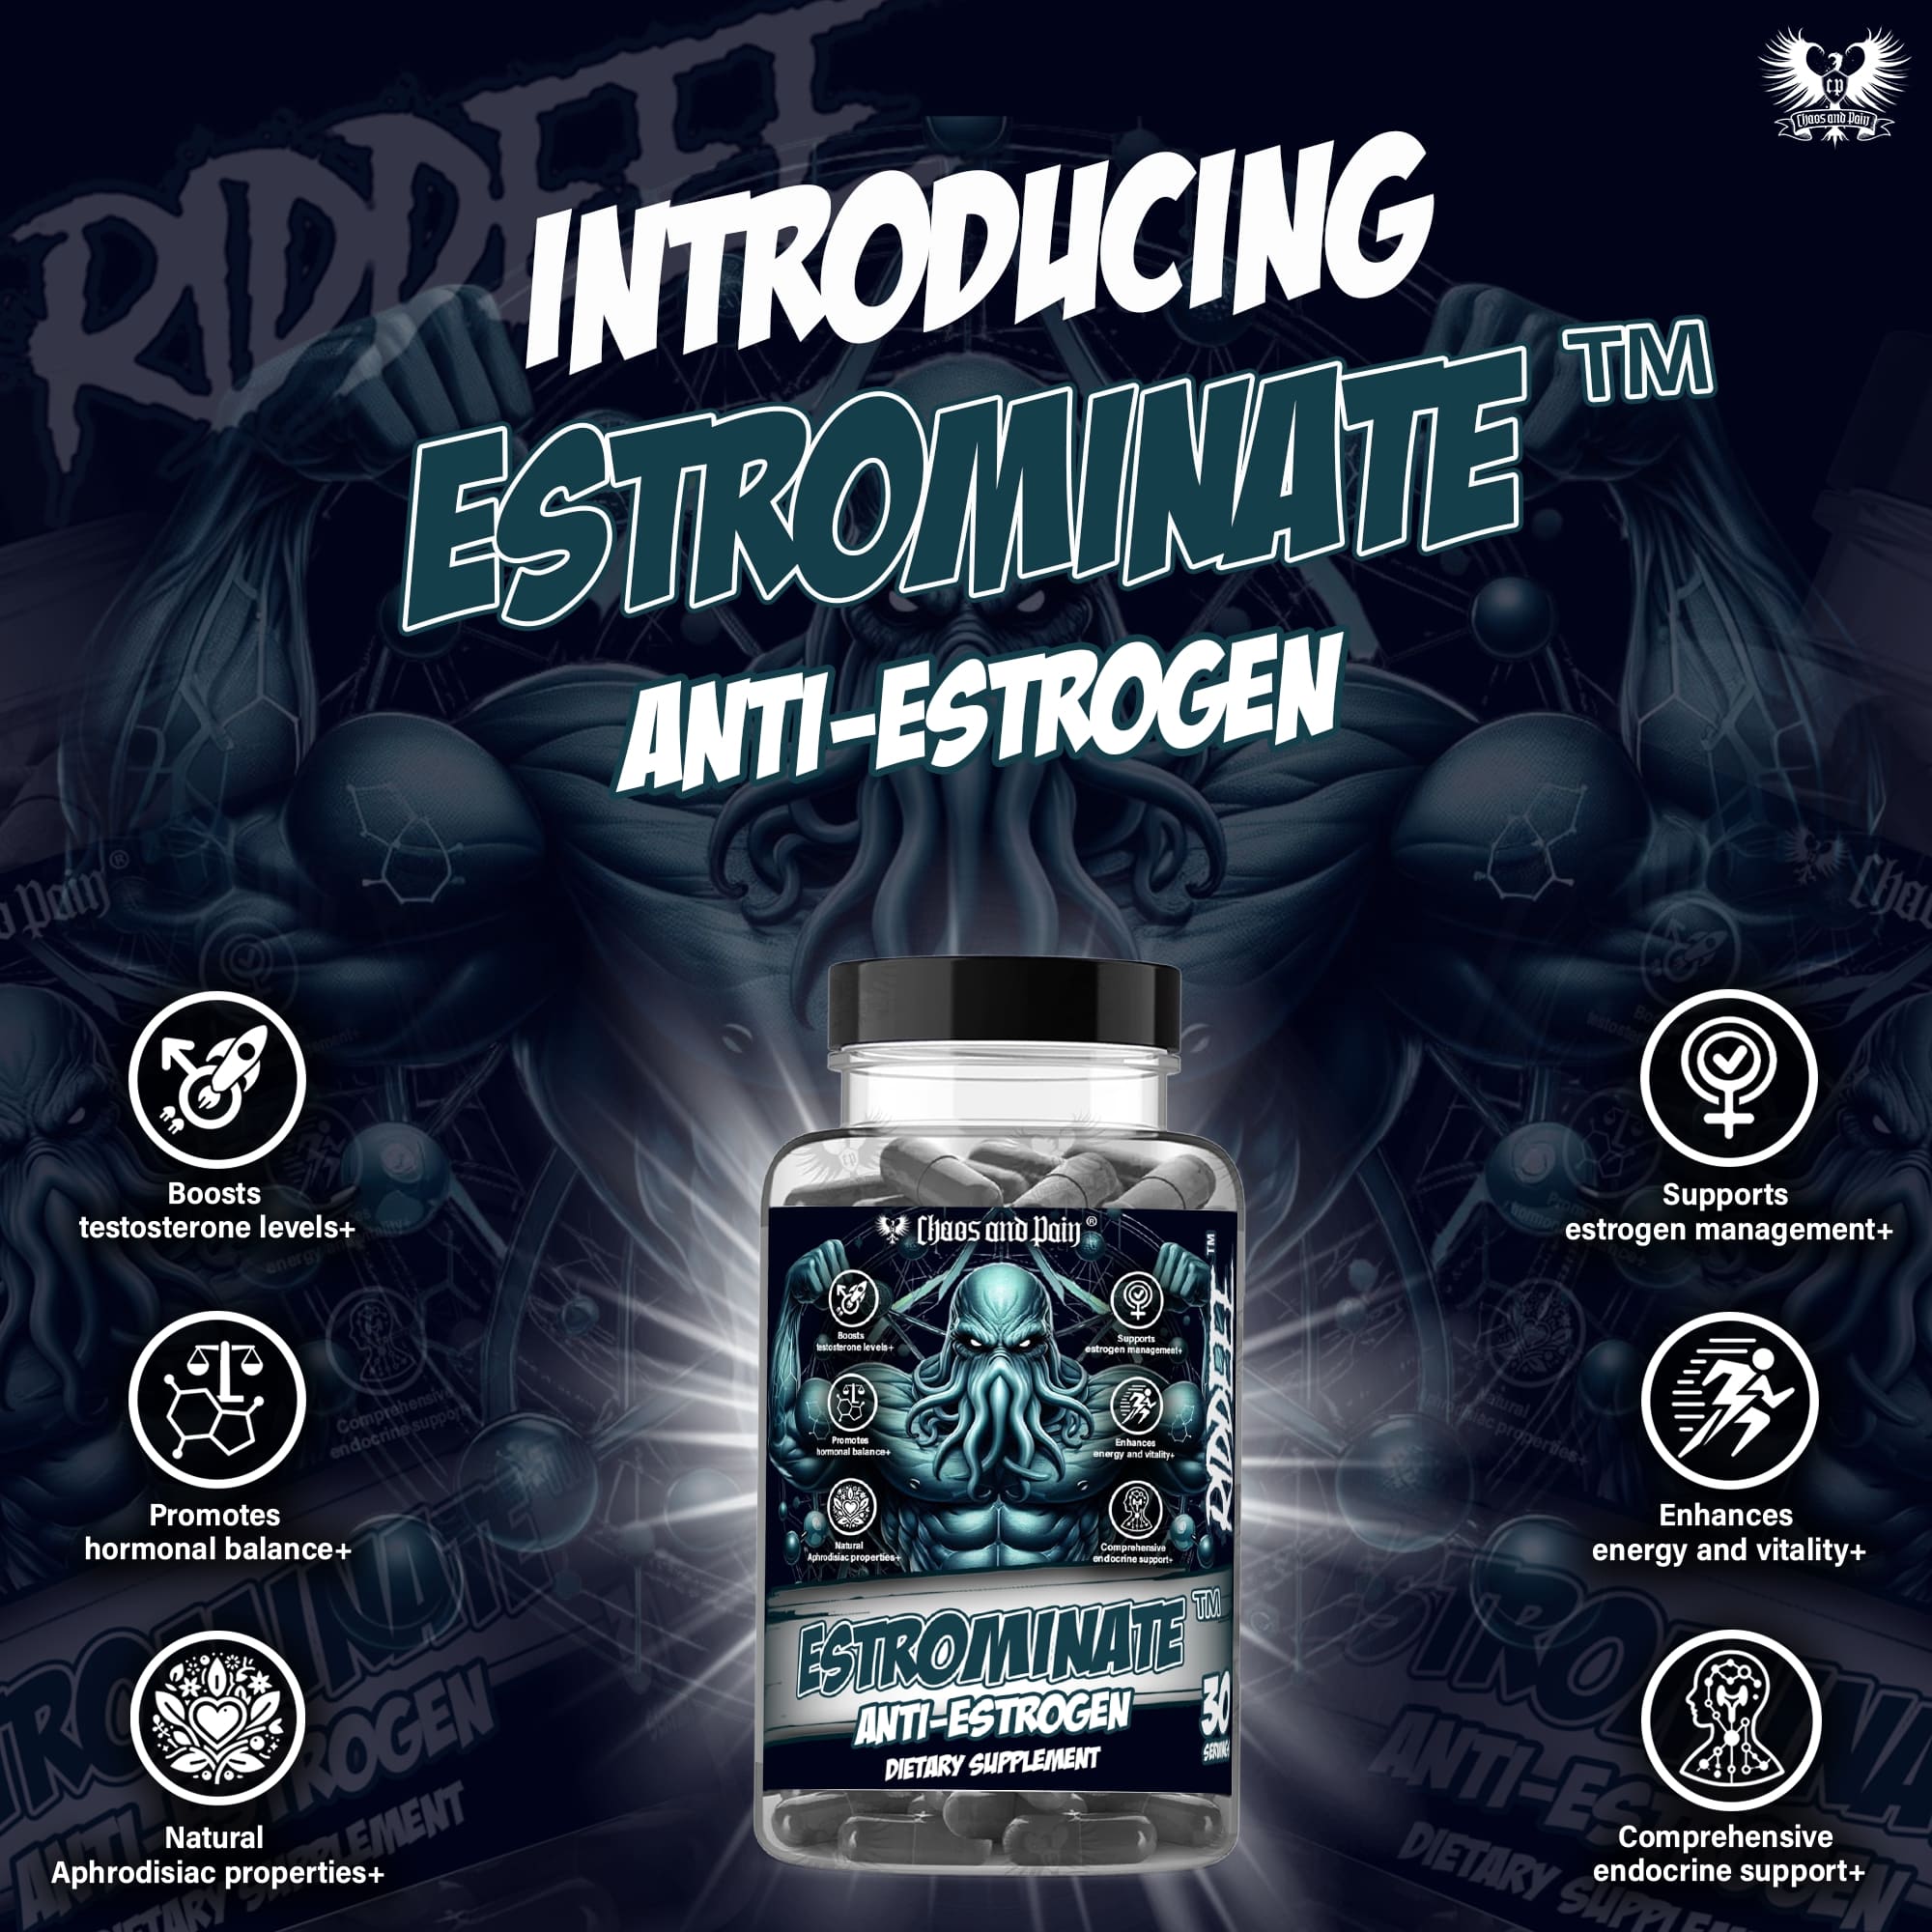 Estrominate - Anti-Estrogen